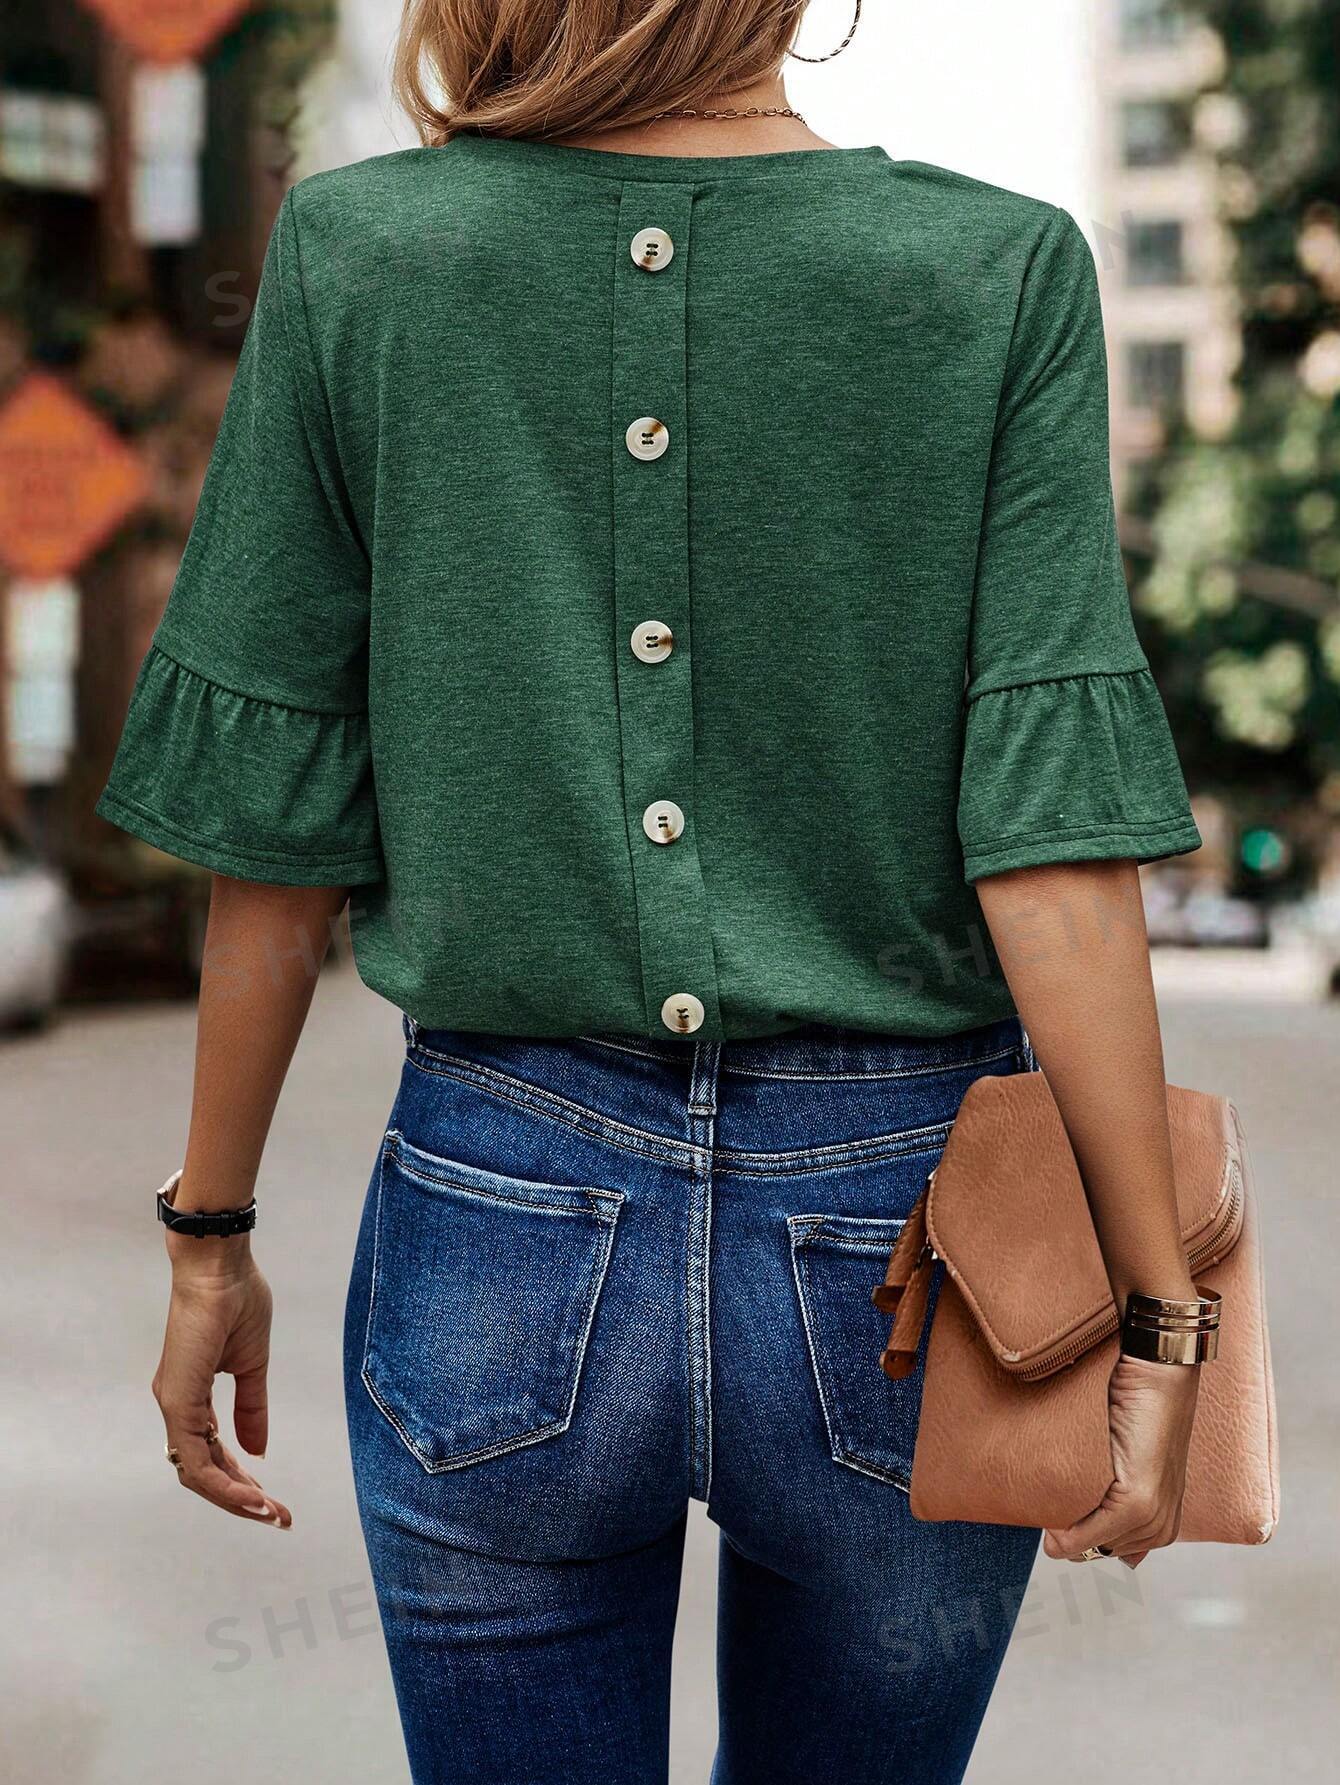 Женская футболка с круглым вырезом и одним рядом пуговиц сзади, темно-зеленый